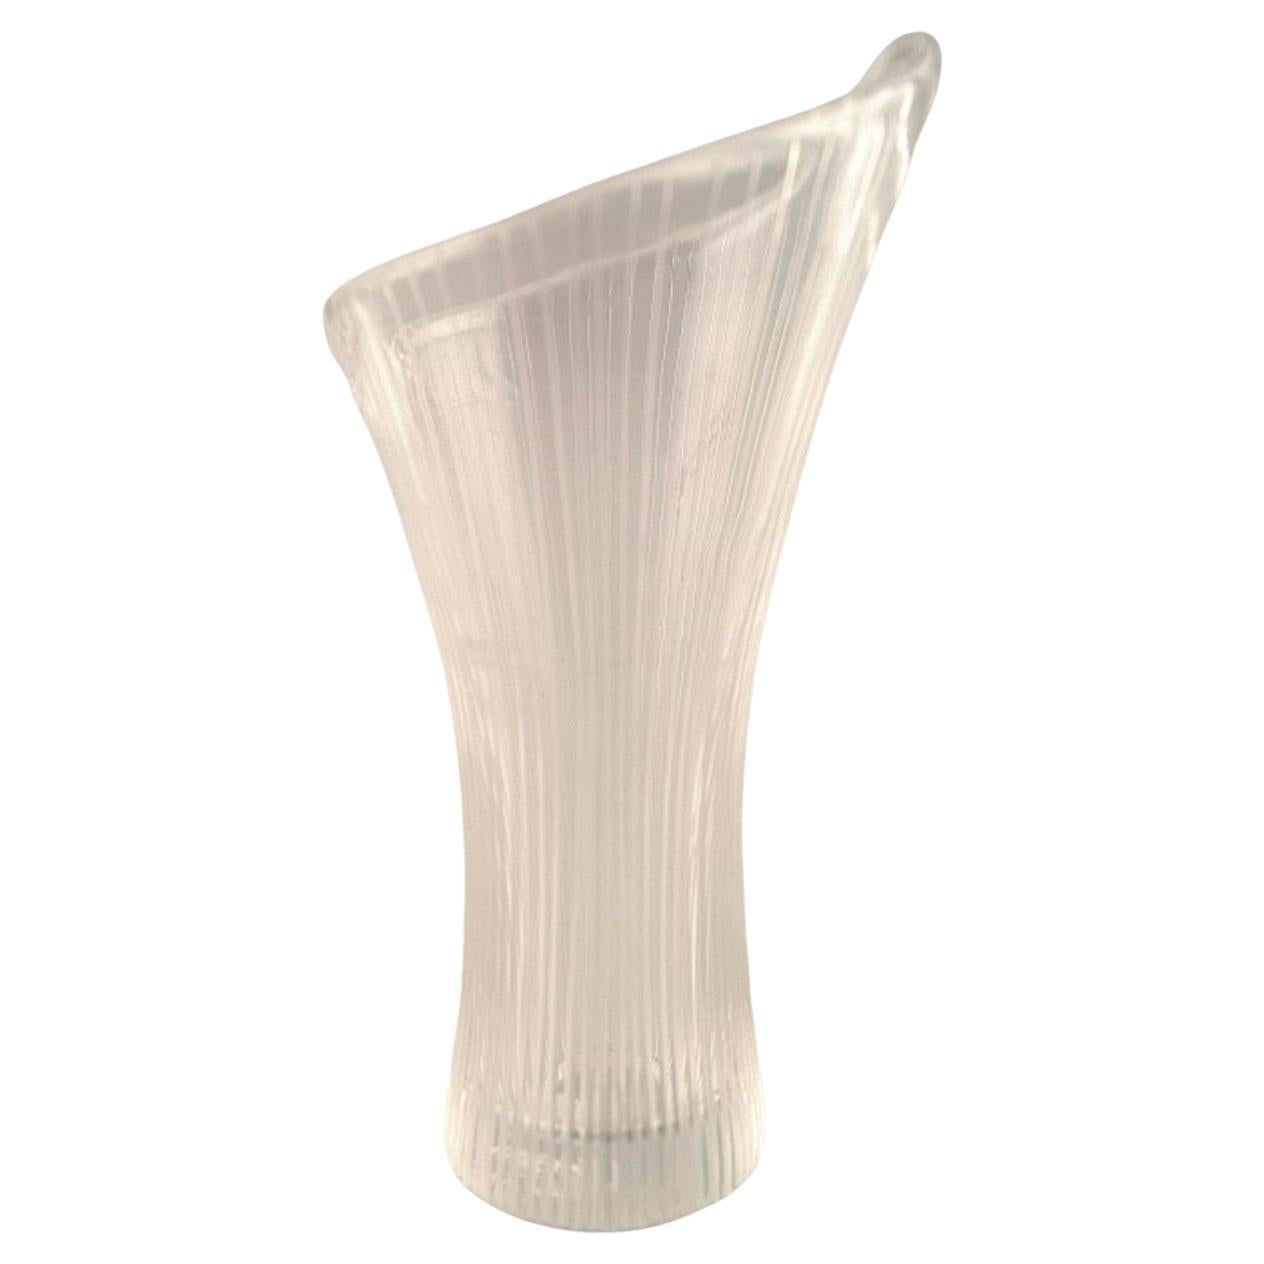 Tapio Wirkkala for Iittala.  Finnish design. Clear art glass vase